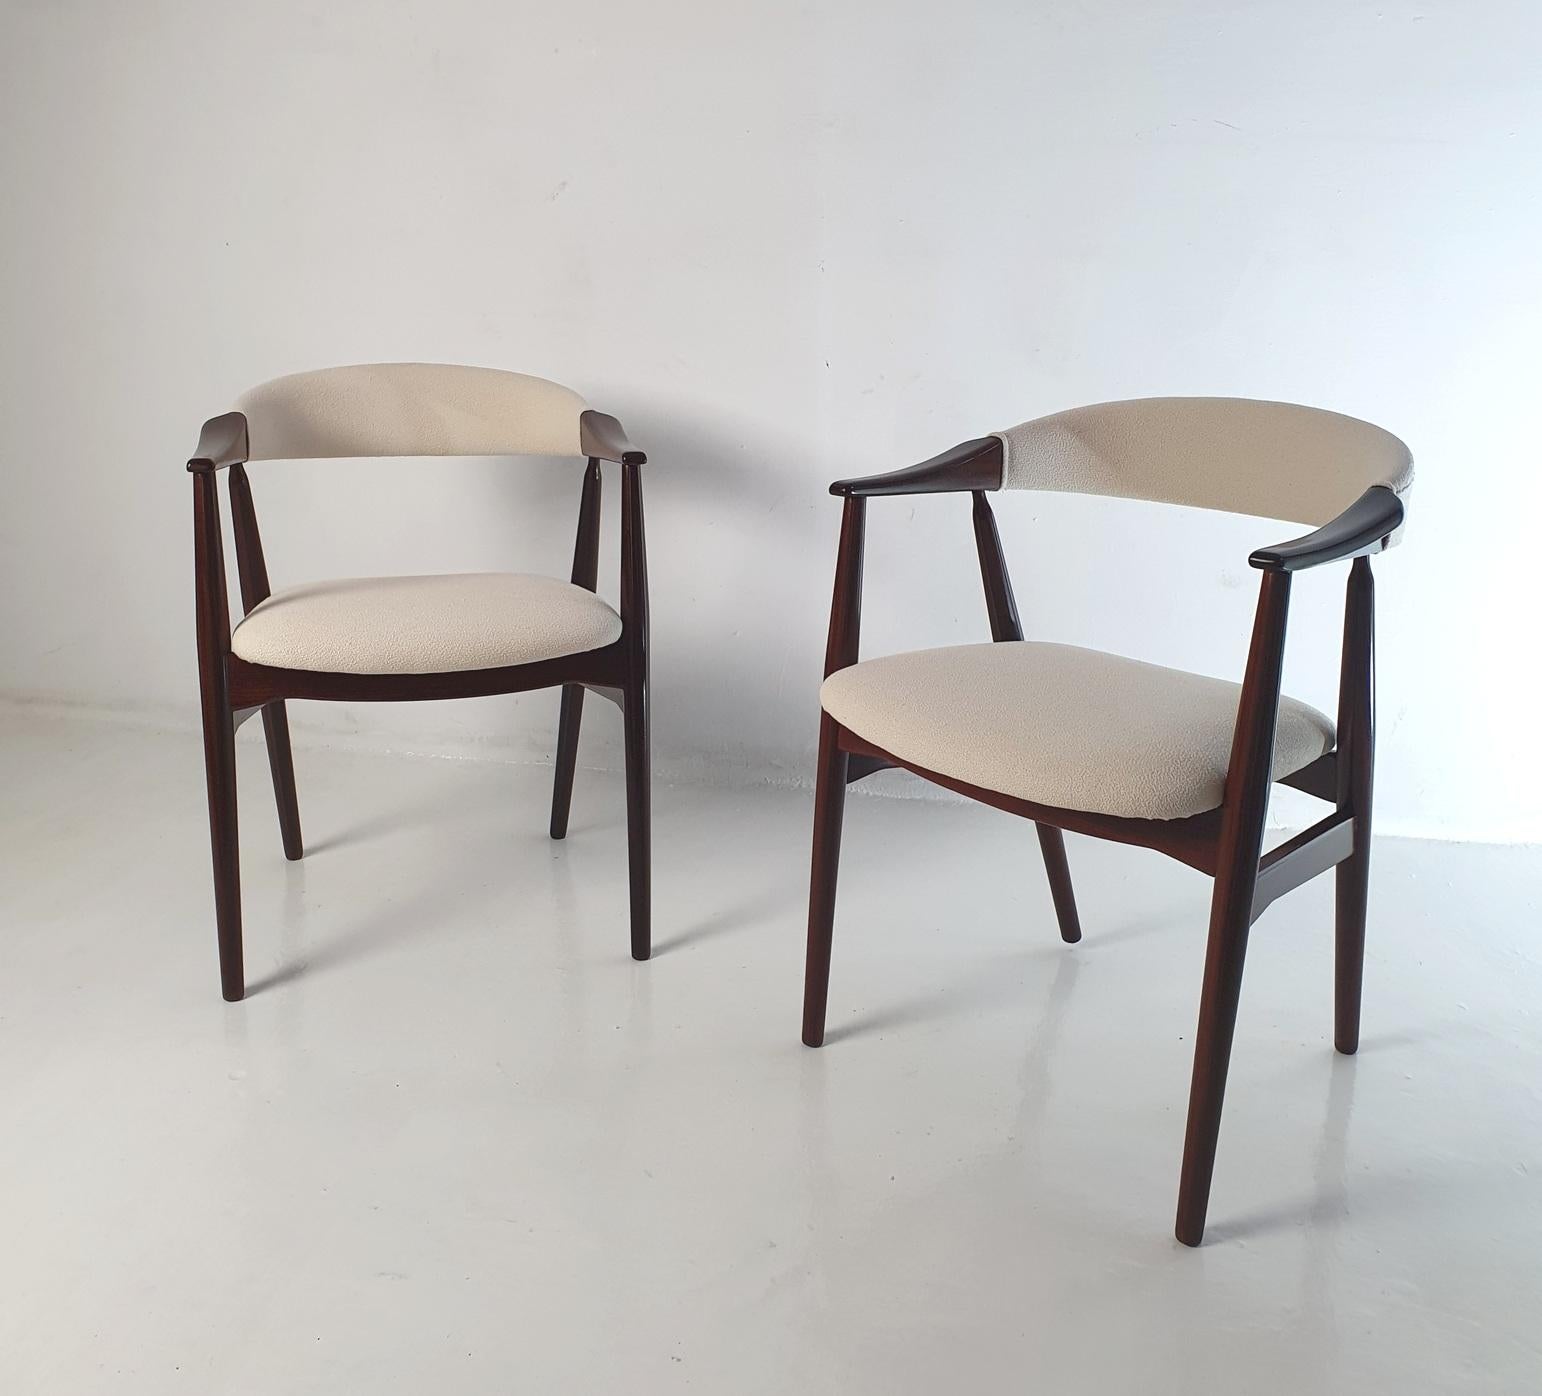 Paire classique de chaises de bureau modèle 213 conçues par Thomas Harlev pour Farstrup Mobler, Danemark.
Les chaises sont confortables, tant au niveau de l'assise que du dossier, grâce à une conception soignée.

Les chaises sont en excellent état